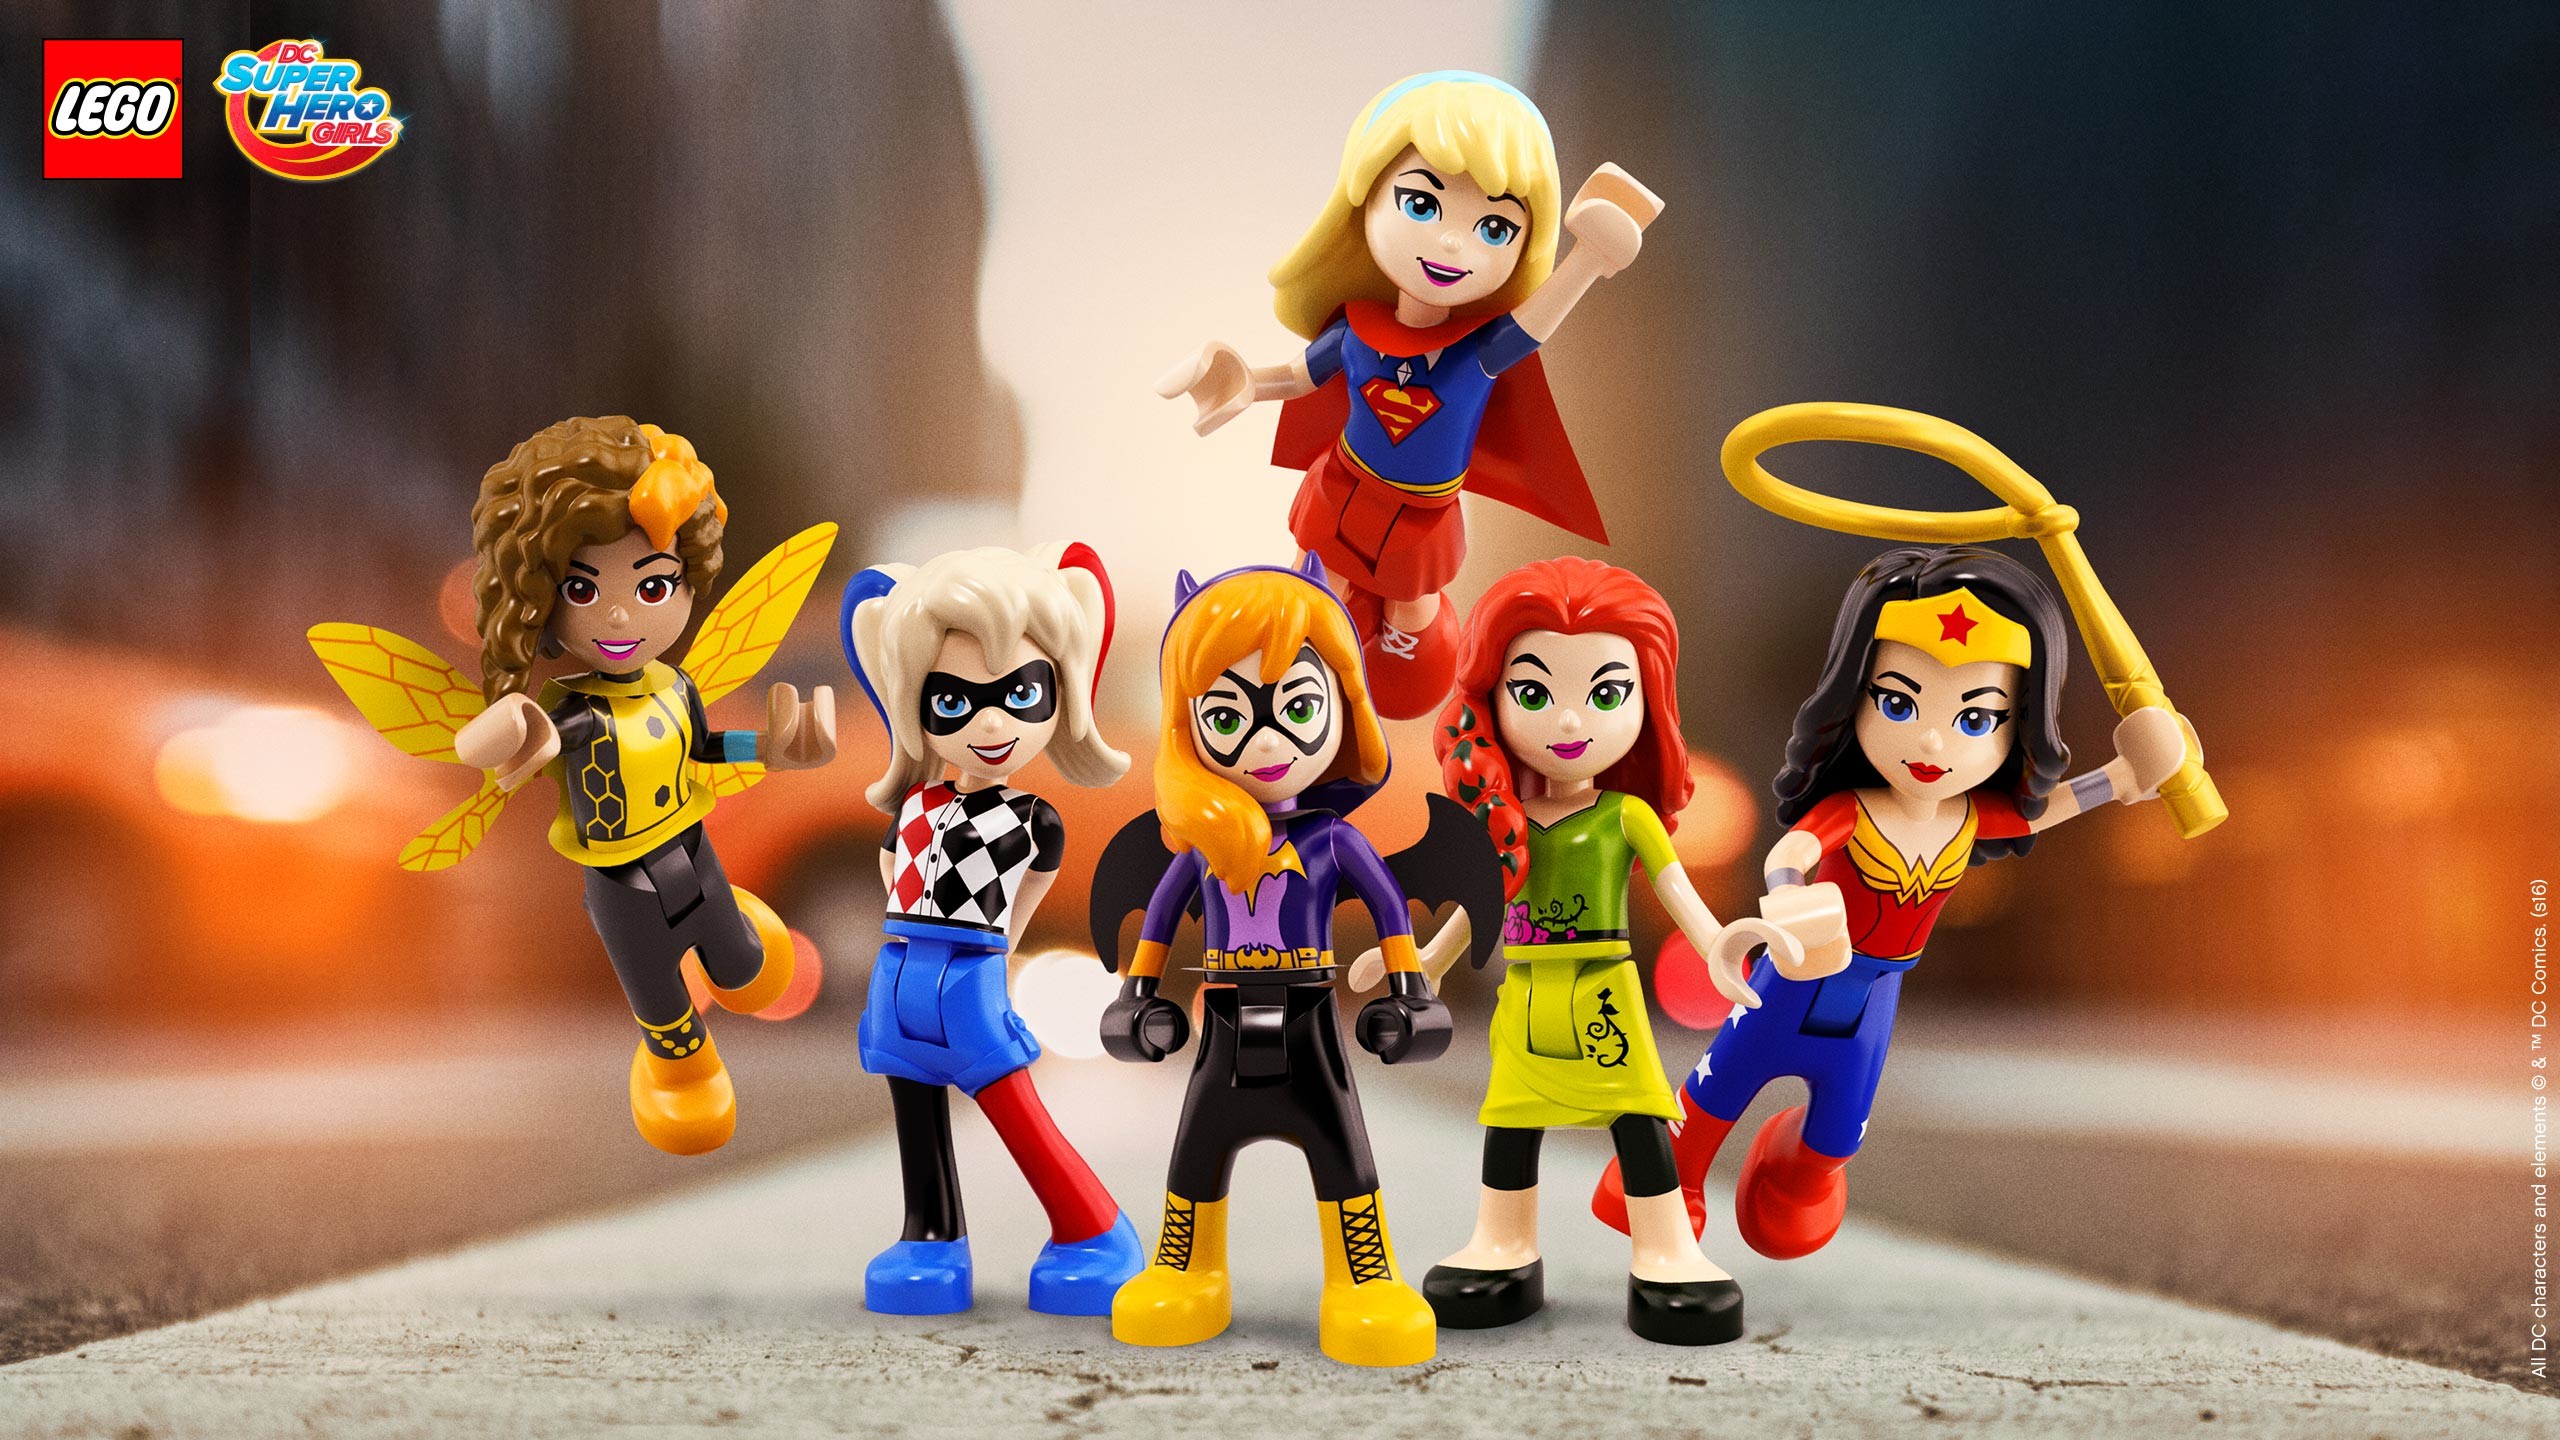 2560x1440 LEGOÂ® DC Super Hero Girlsâ¢ Save the day